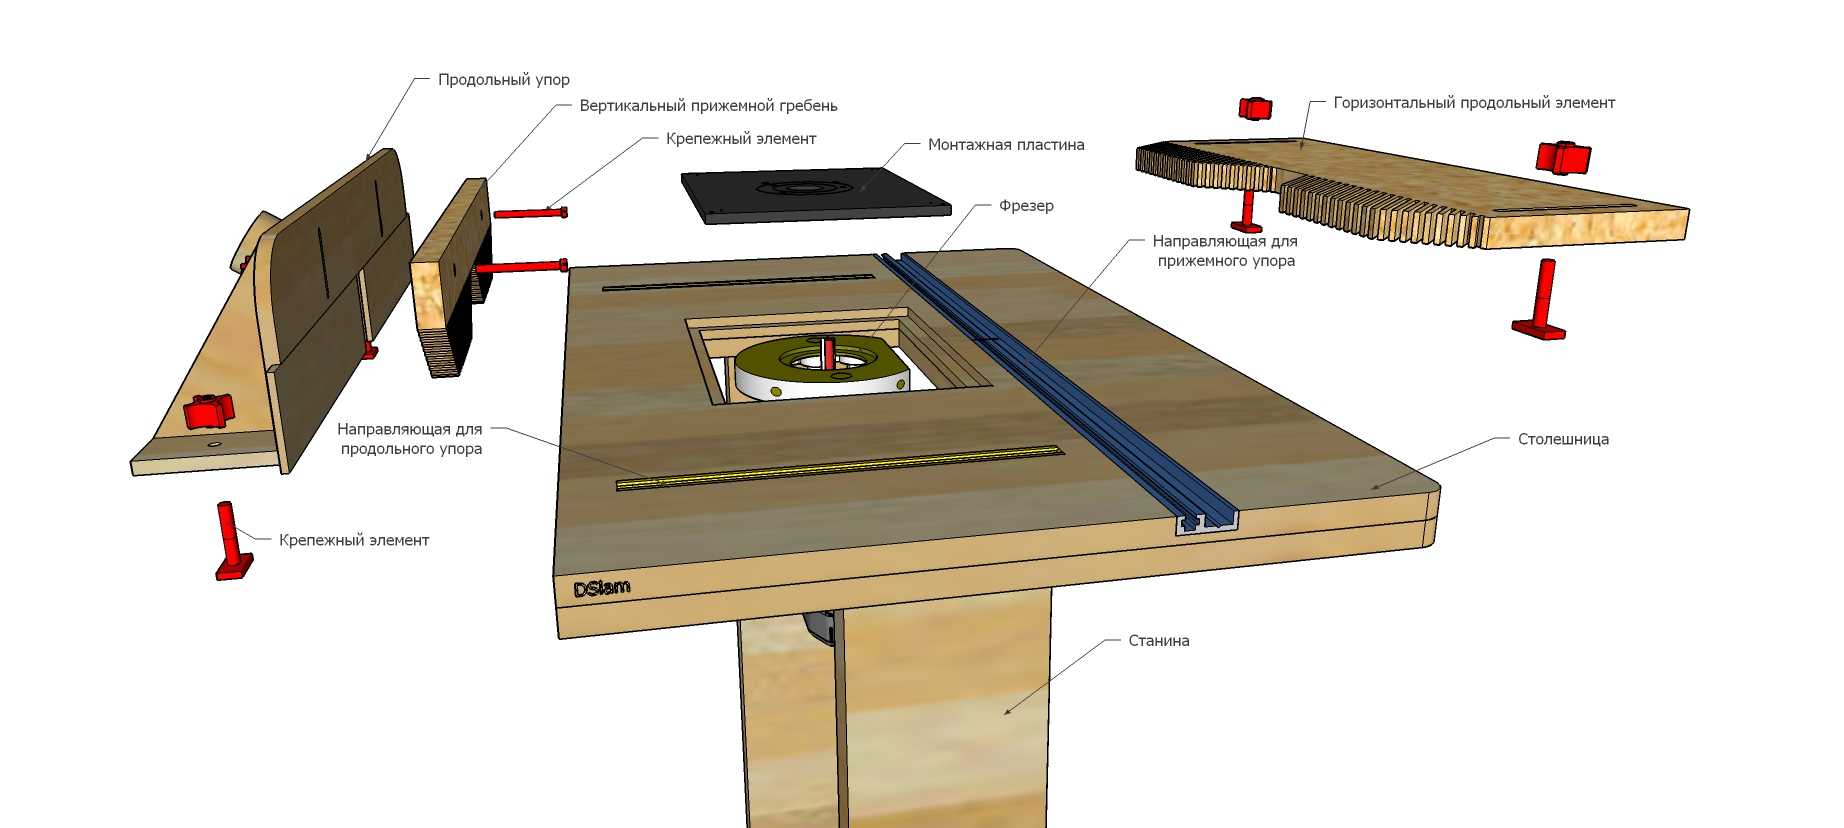 Фрезерный стол может стать самым важным инструментом, который может использовать плотник